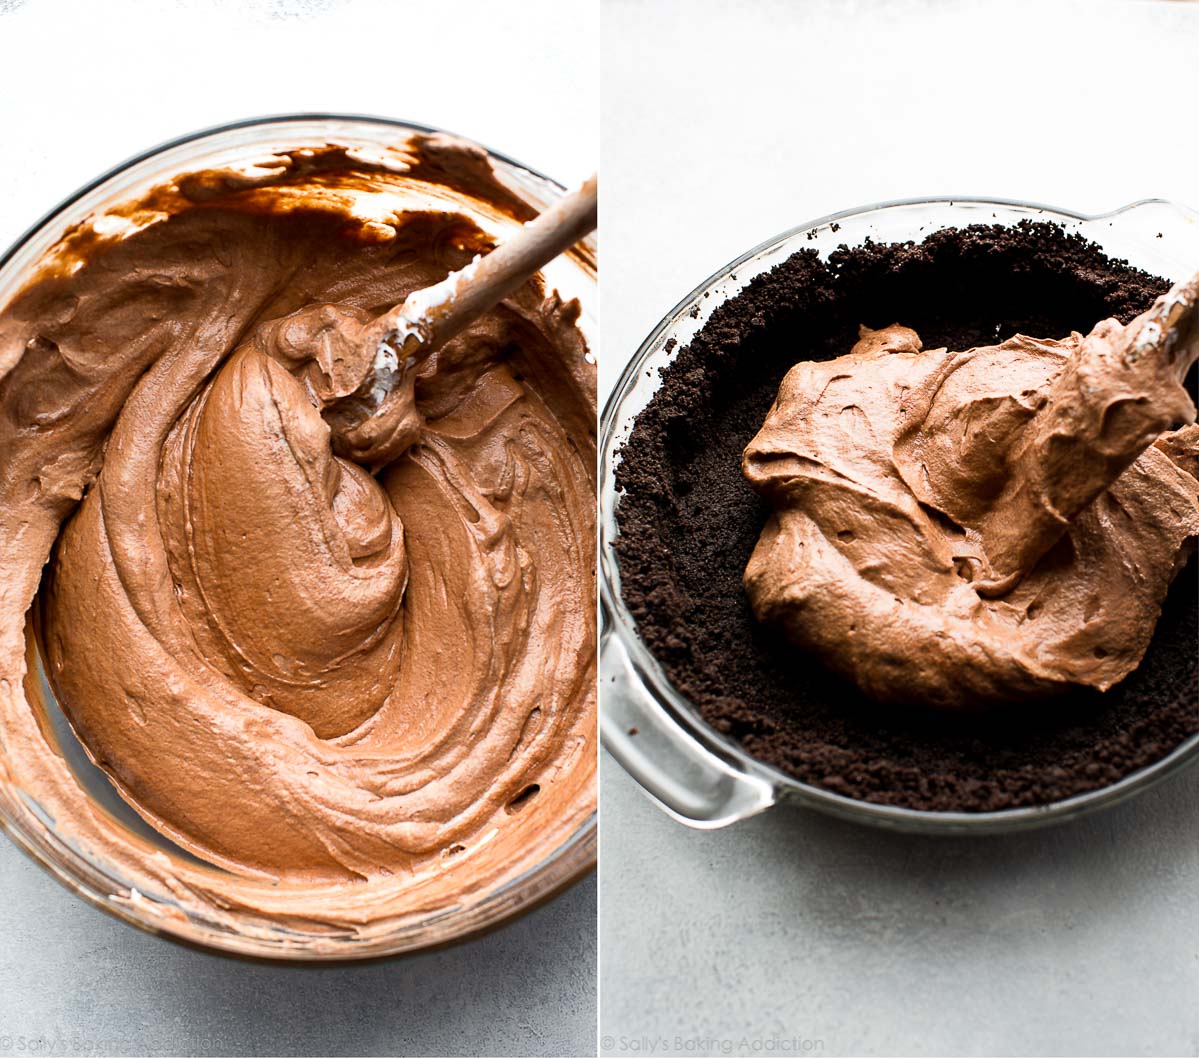 Comment faire une tarte au chocolat exorbitante sur sallysbakingaddiction.com